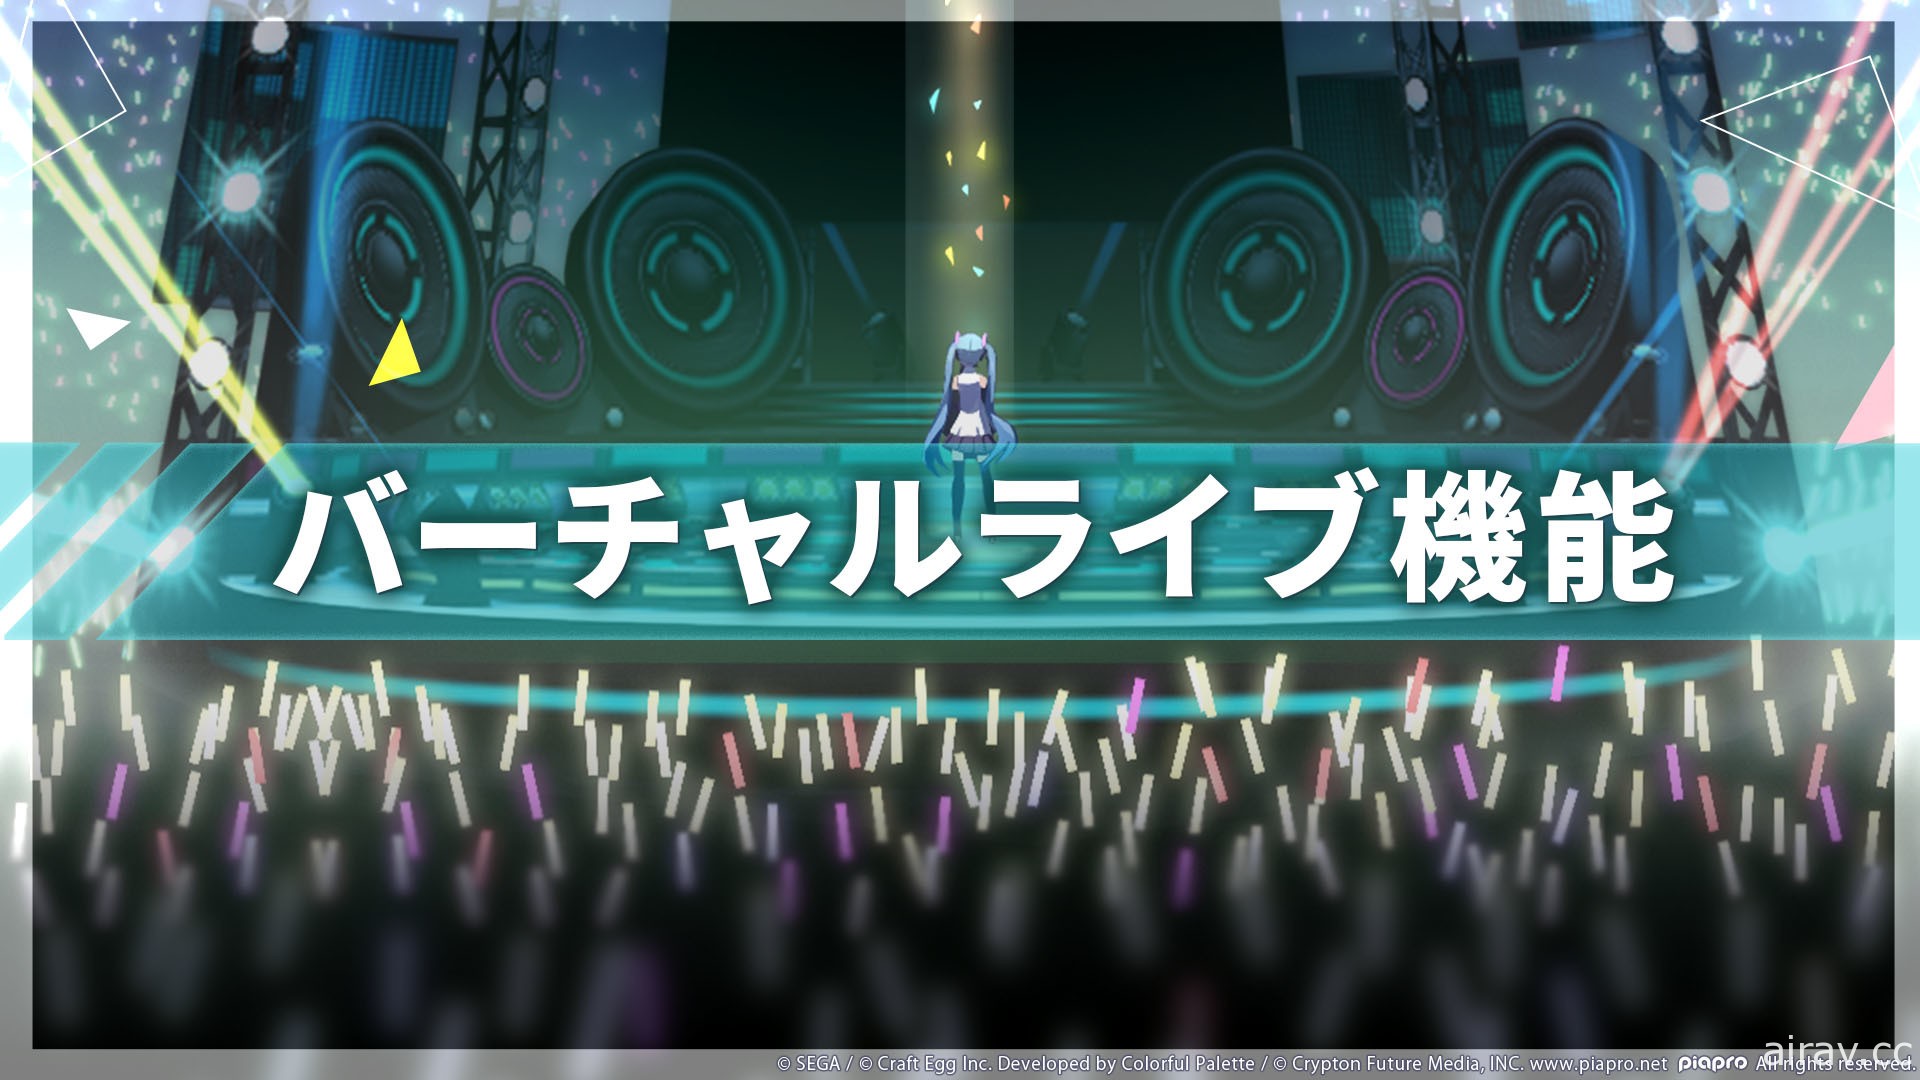 《世界計畫 彩色舞台 feat. 初音未來》發表「虛擬 Live」功能 體驗版遊戲 9 月 4 日推出